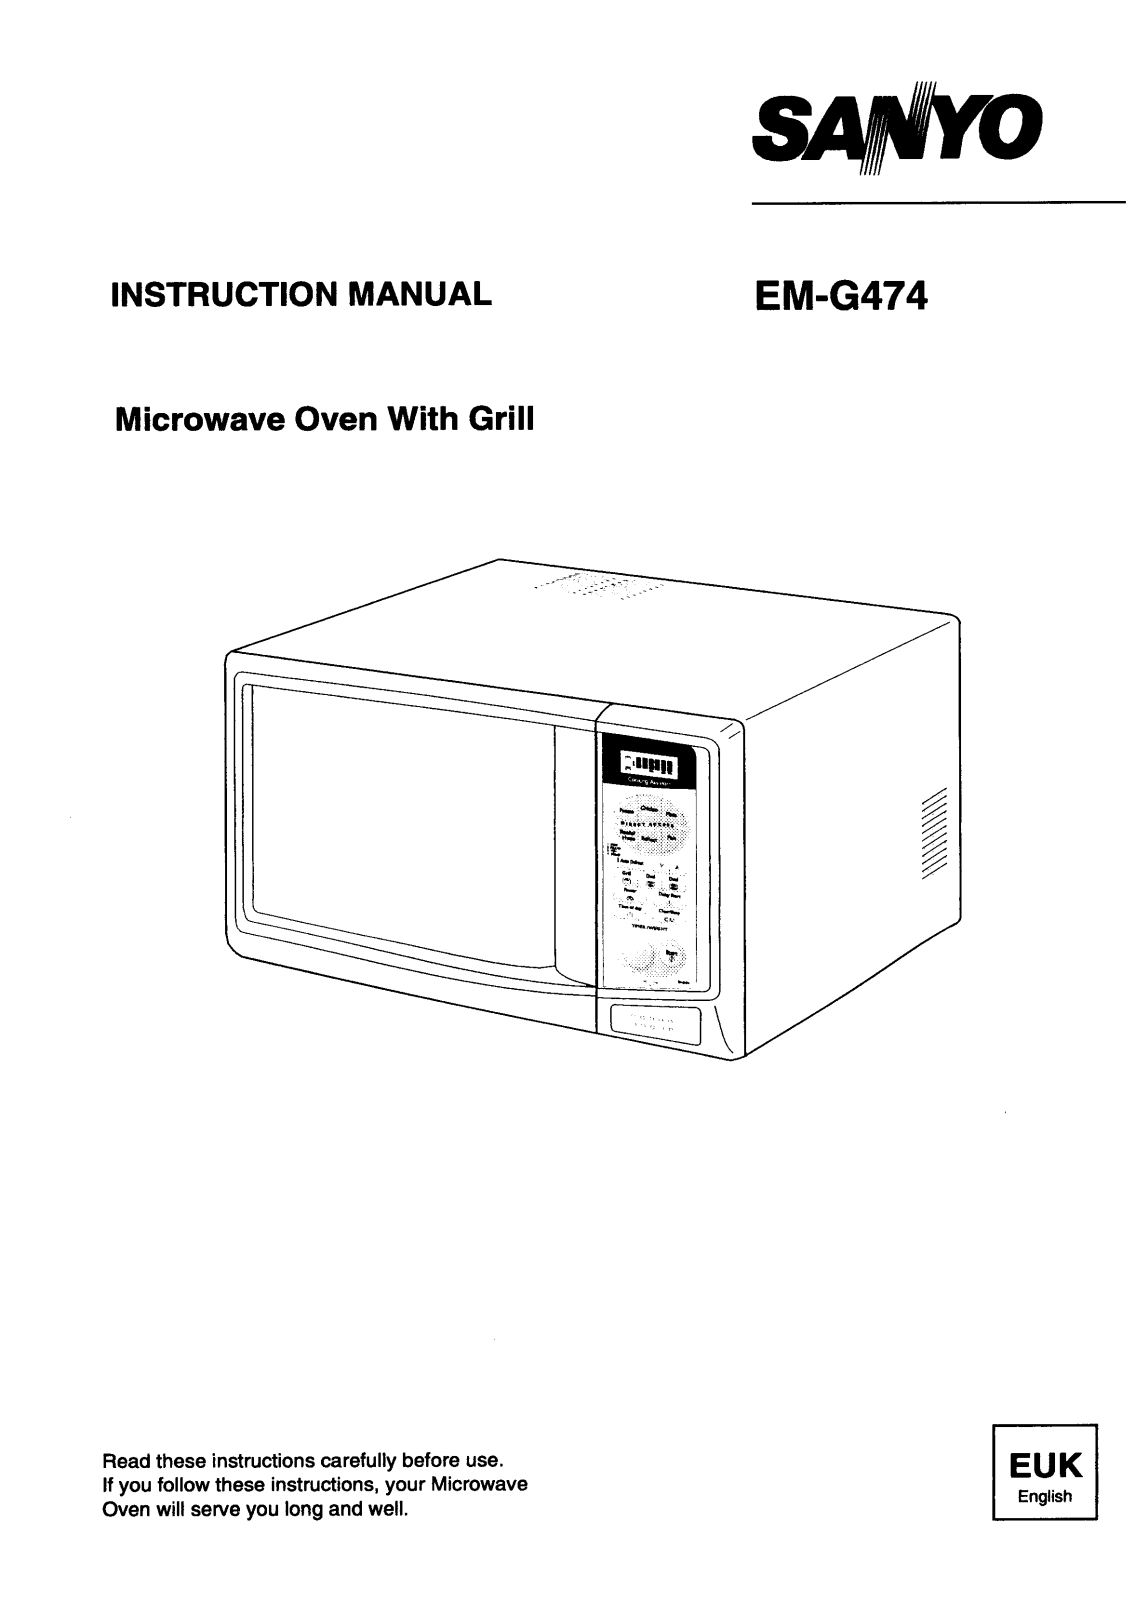 Sanyo EM-G474 Instruction Manual